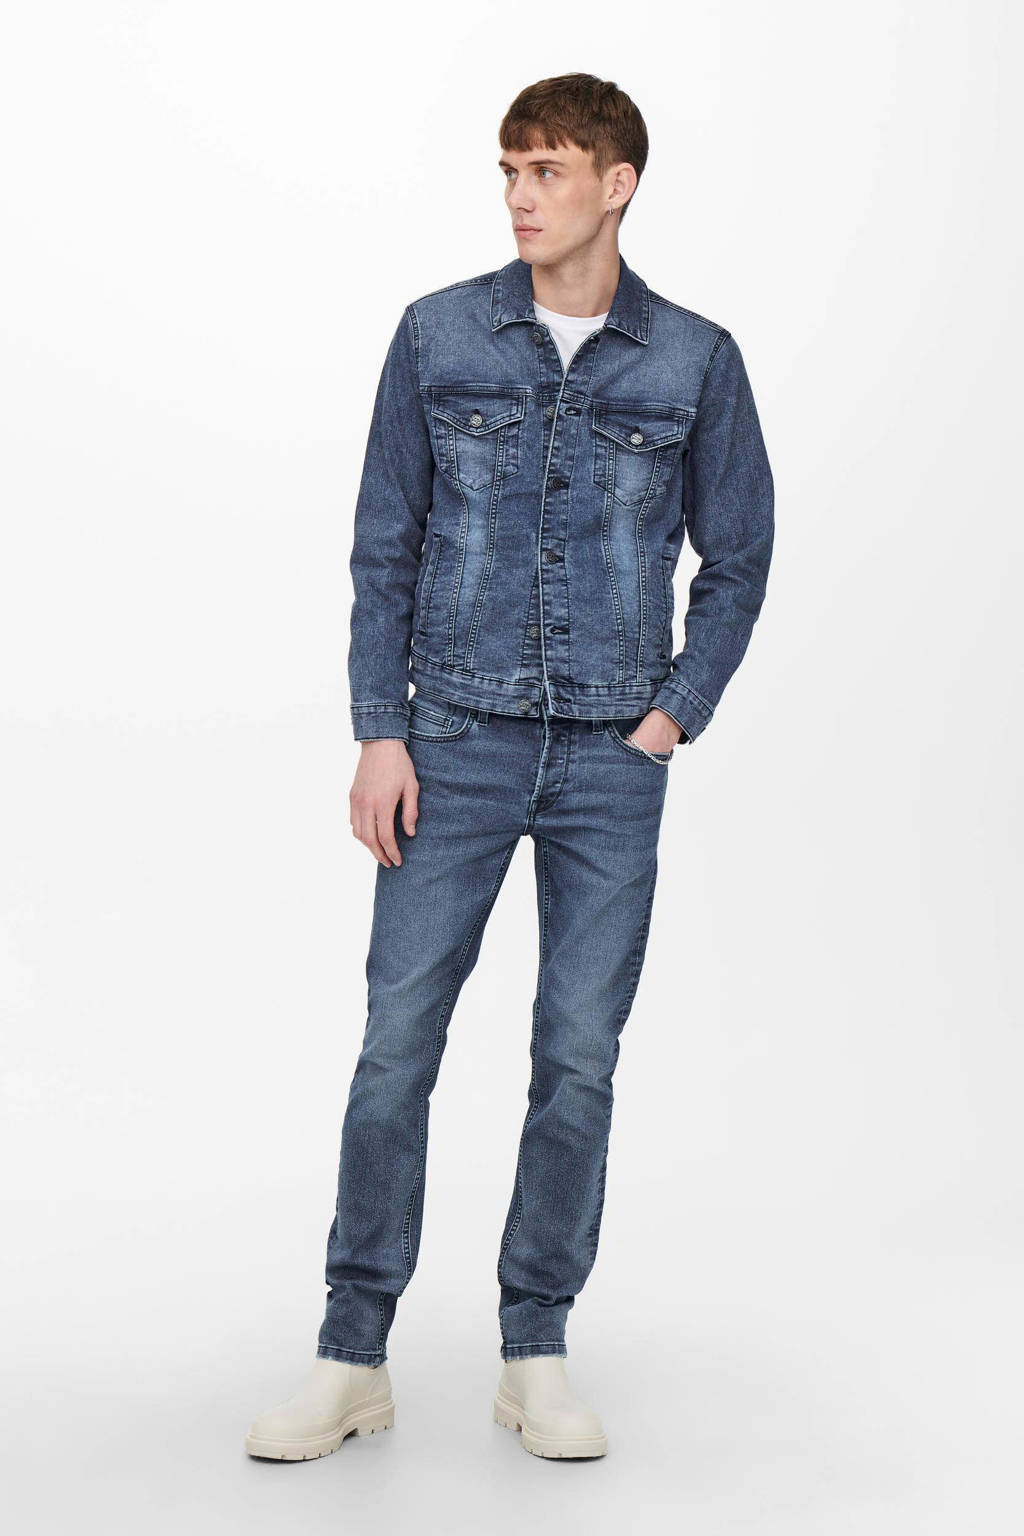 ONLY & SONS slim fit jeans ONSLOOM blue denim 0750, Blue denim 0750